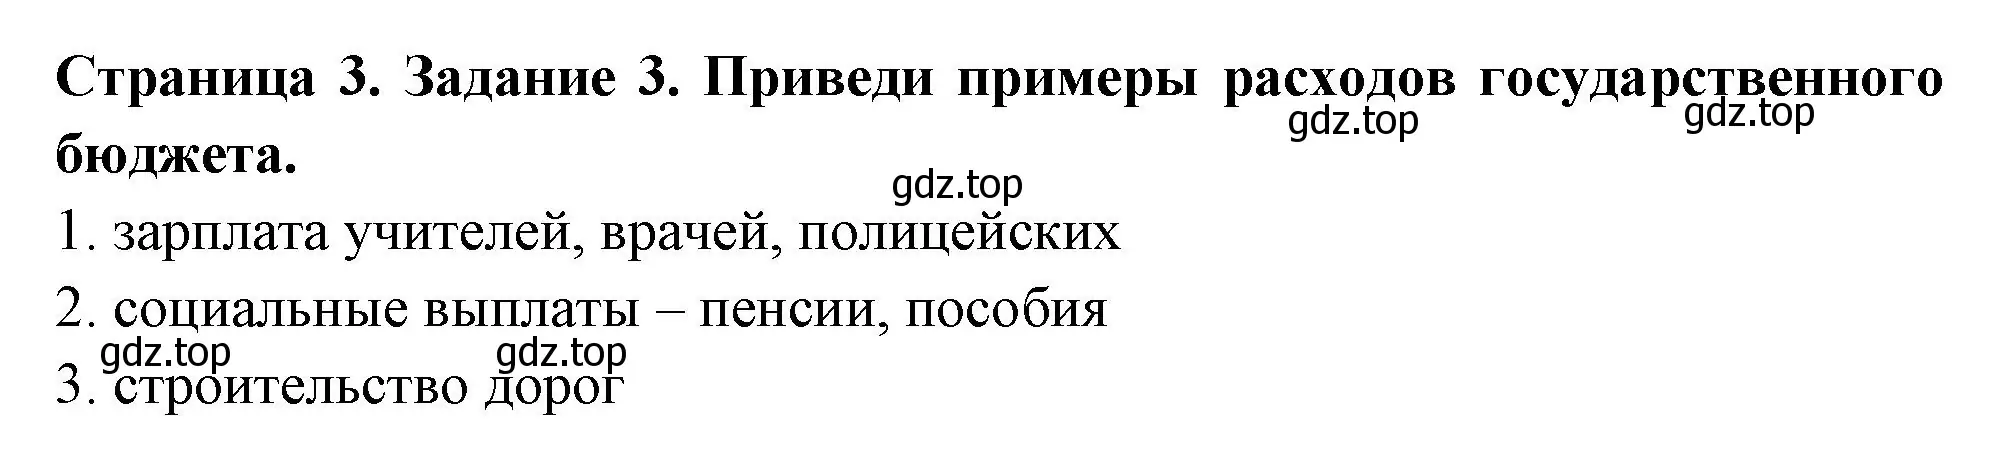 Решение номер 3 (страница 3) гдз по окружающему миру 4 класс Плешаков, Крючкова, проверочные работы